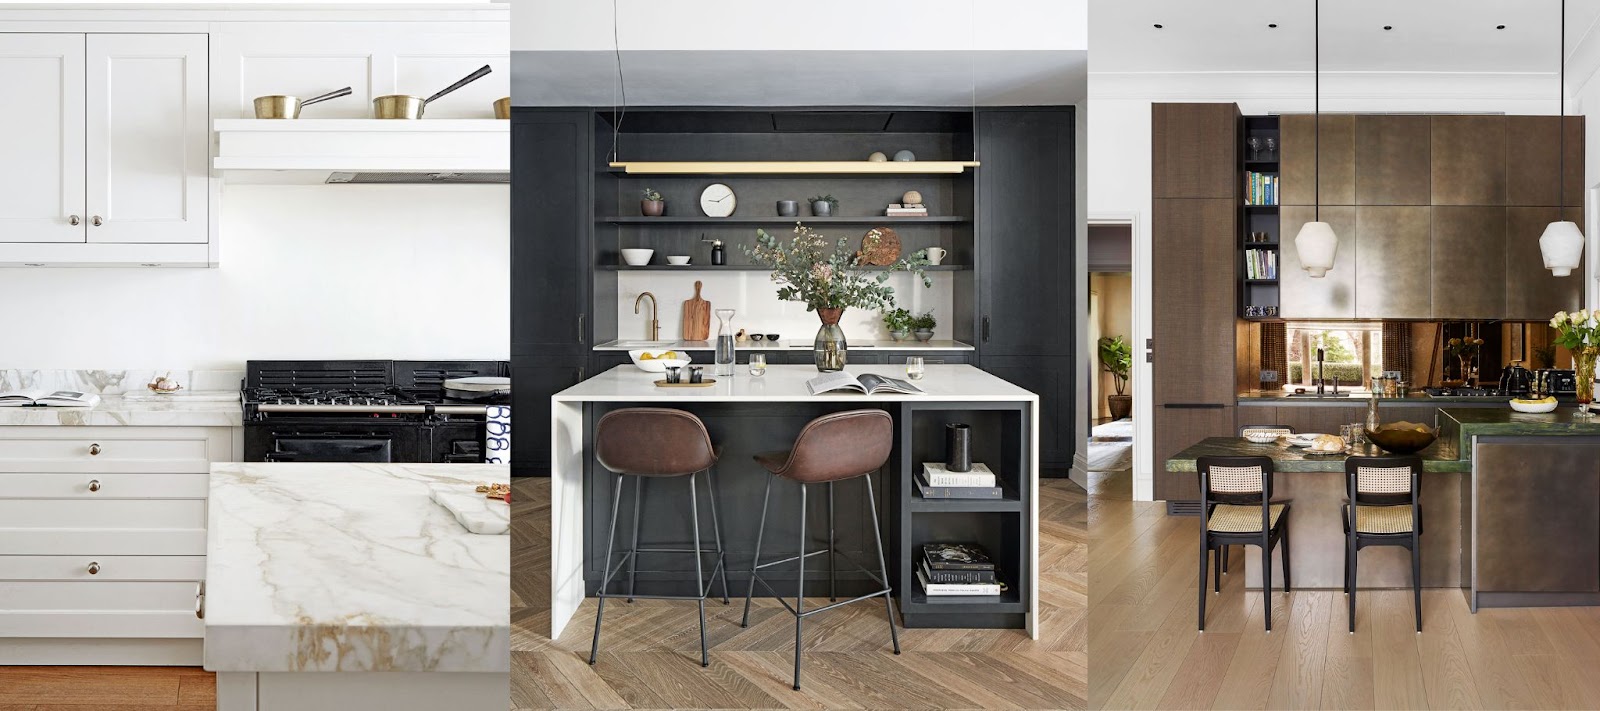 kitchen interior design for small spaces